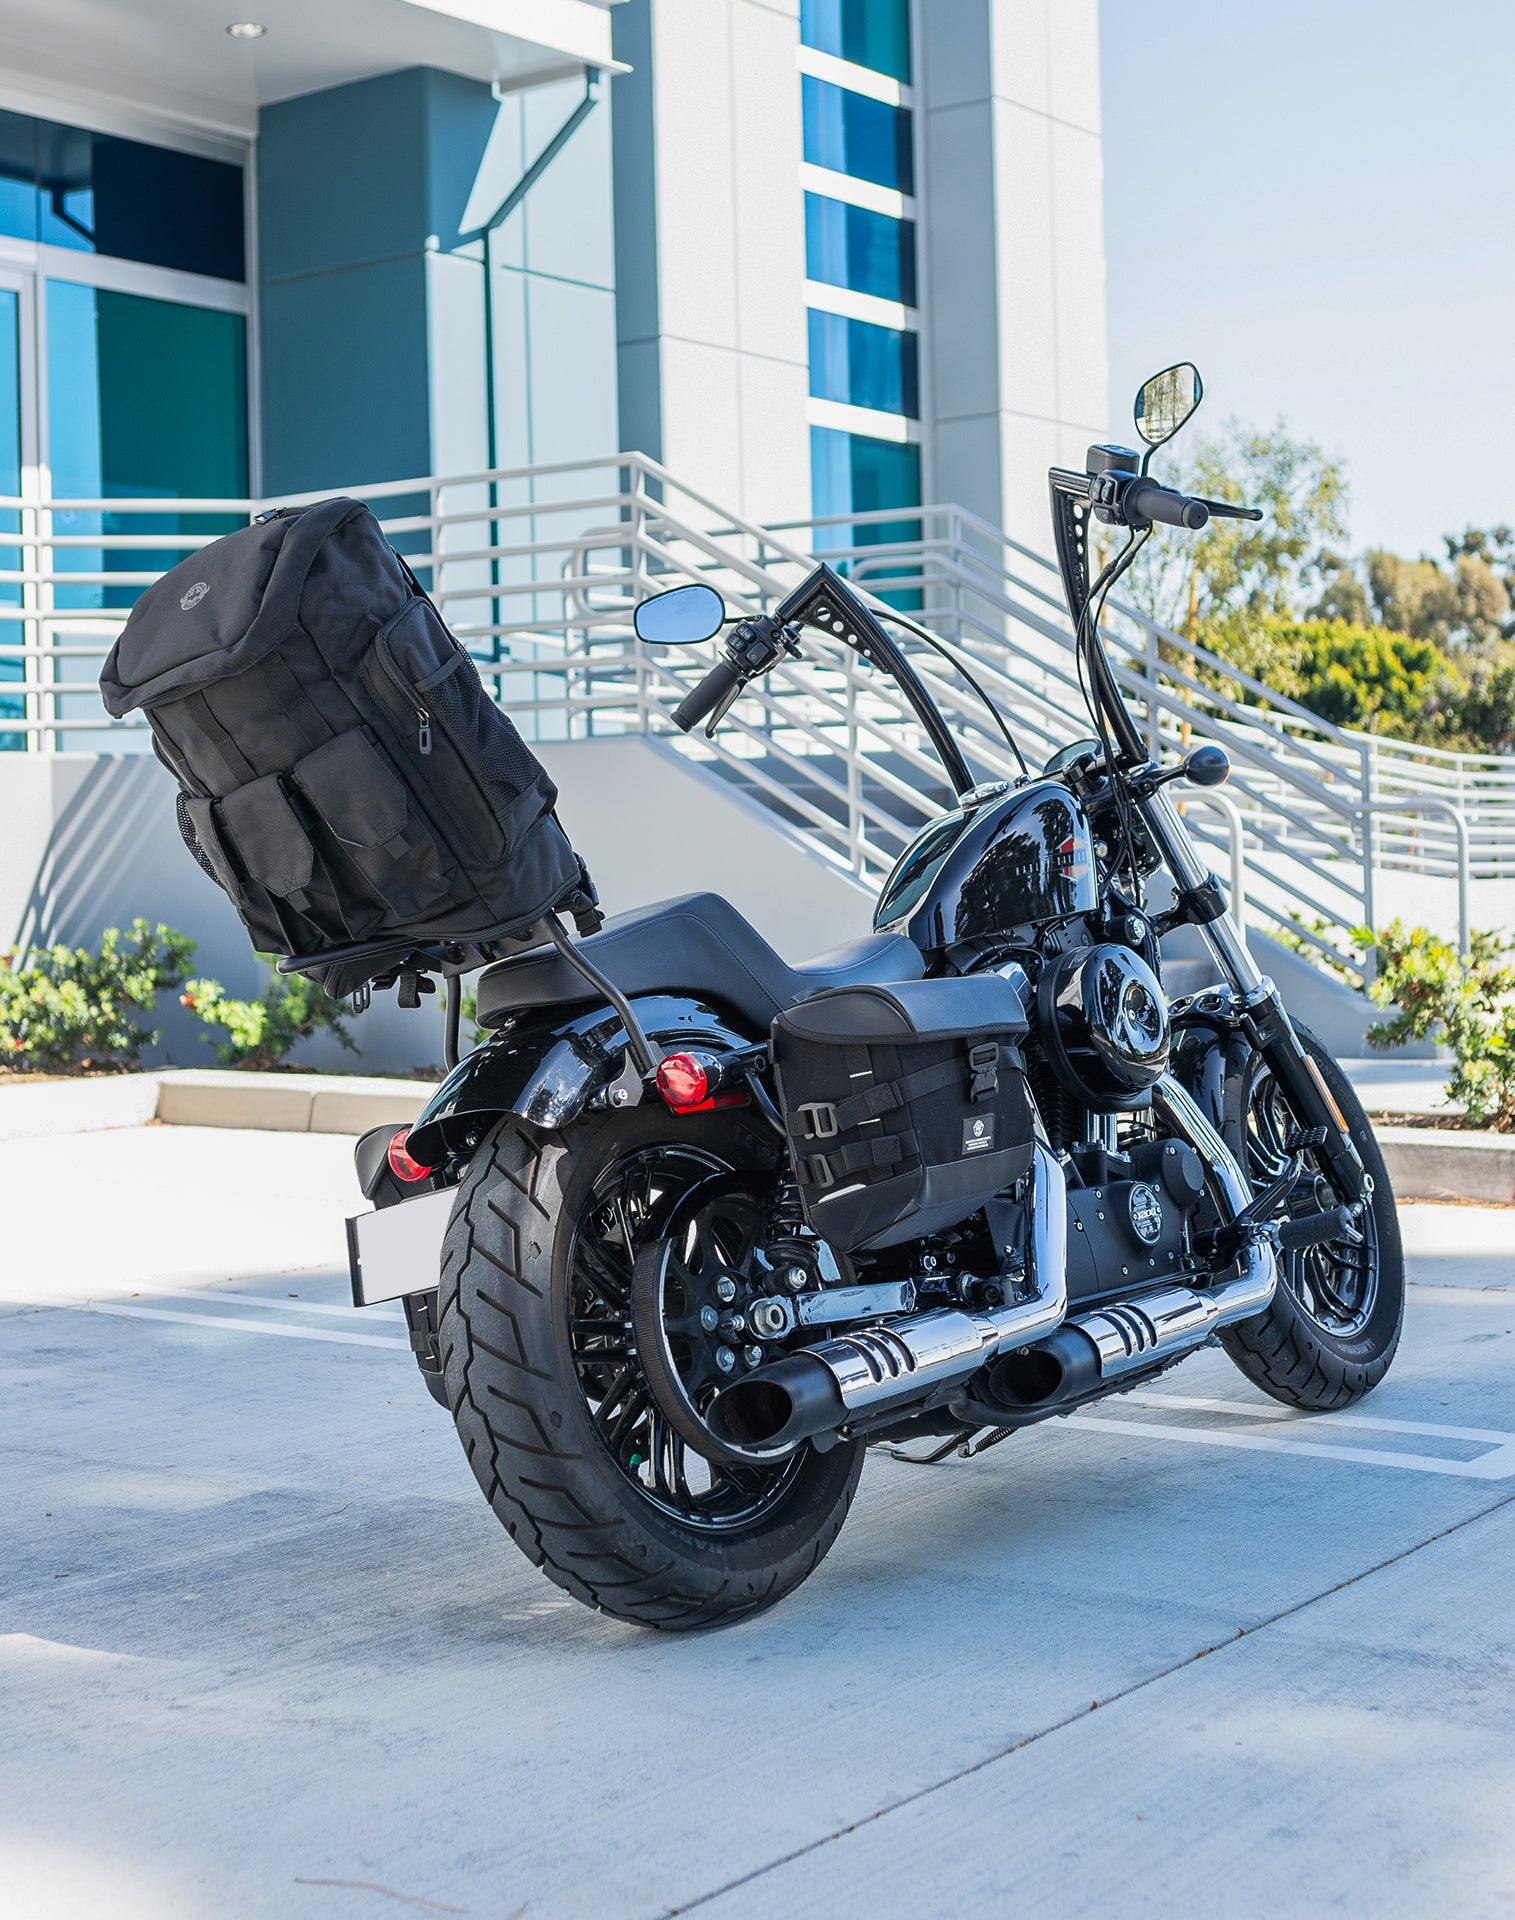 32L - Trident Large Honda Motorcycle Tail Bag